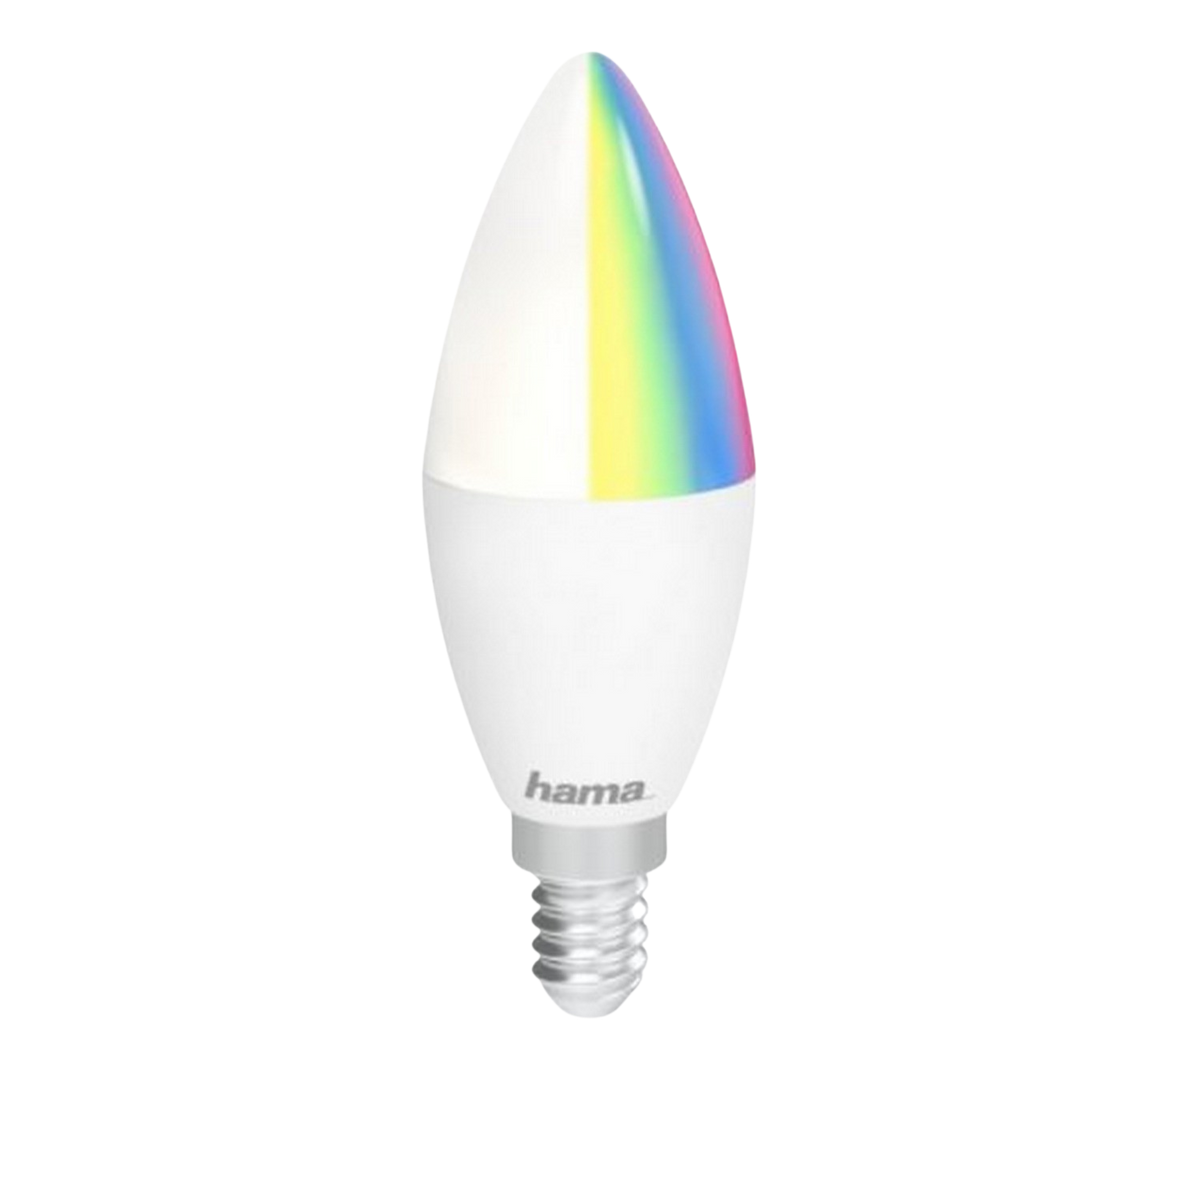 HAMA 176583 WIFI-LED-LAMPE Glühbirne RGBW 5,5W RGB, Weiß E14